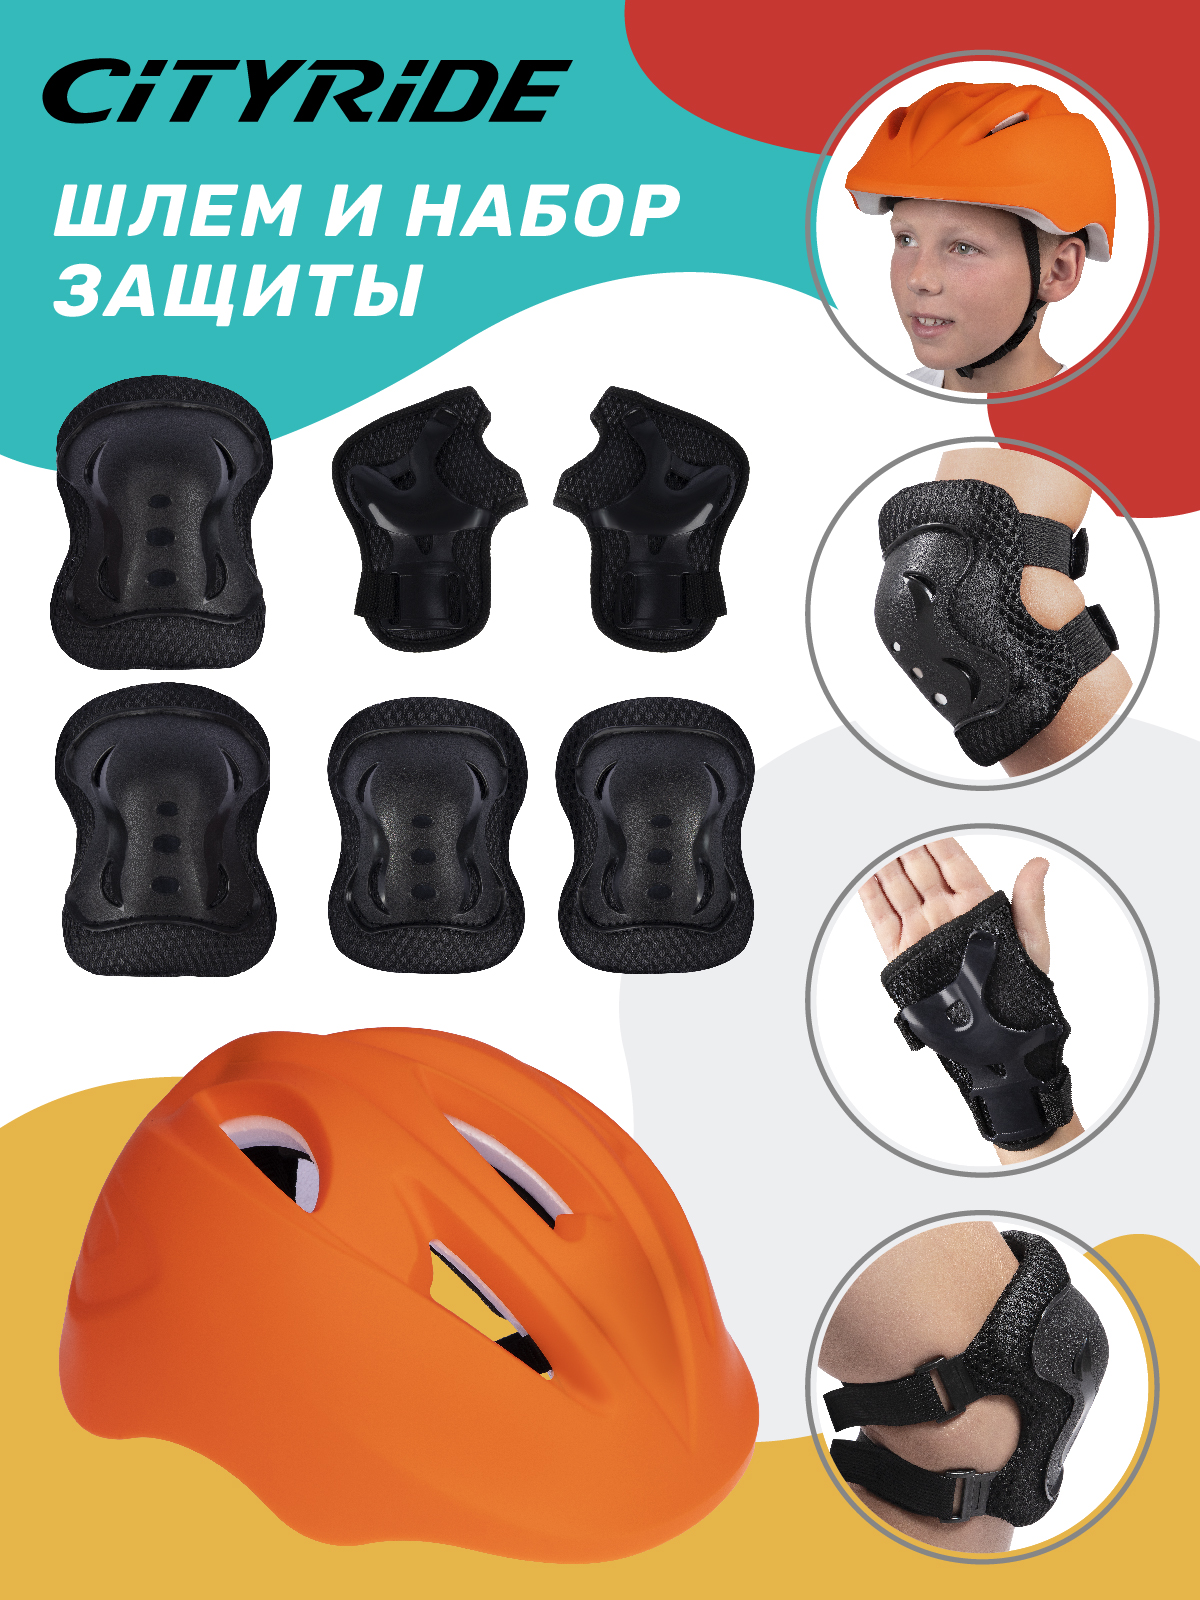 Комплект шлем, спортивная защита для детей ТМ City Ride, размер универсальный, JB0211562 скейтборд city ride дека клен 9 слоев размер 31х8 колеса pu abec 7 jb4200189